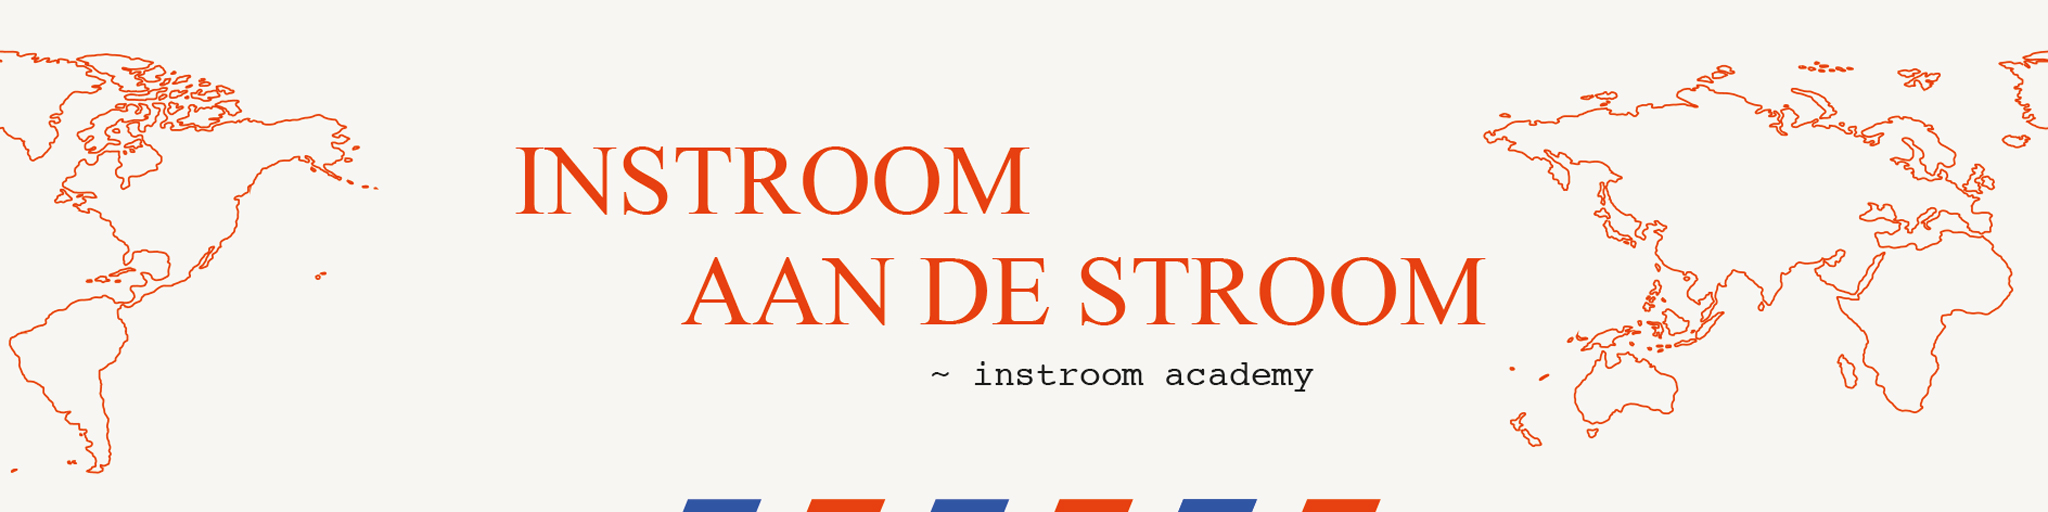 Branding & logo-design voor Instroom academy van Seppe Nobels en GATAM.